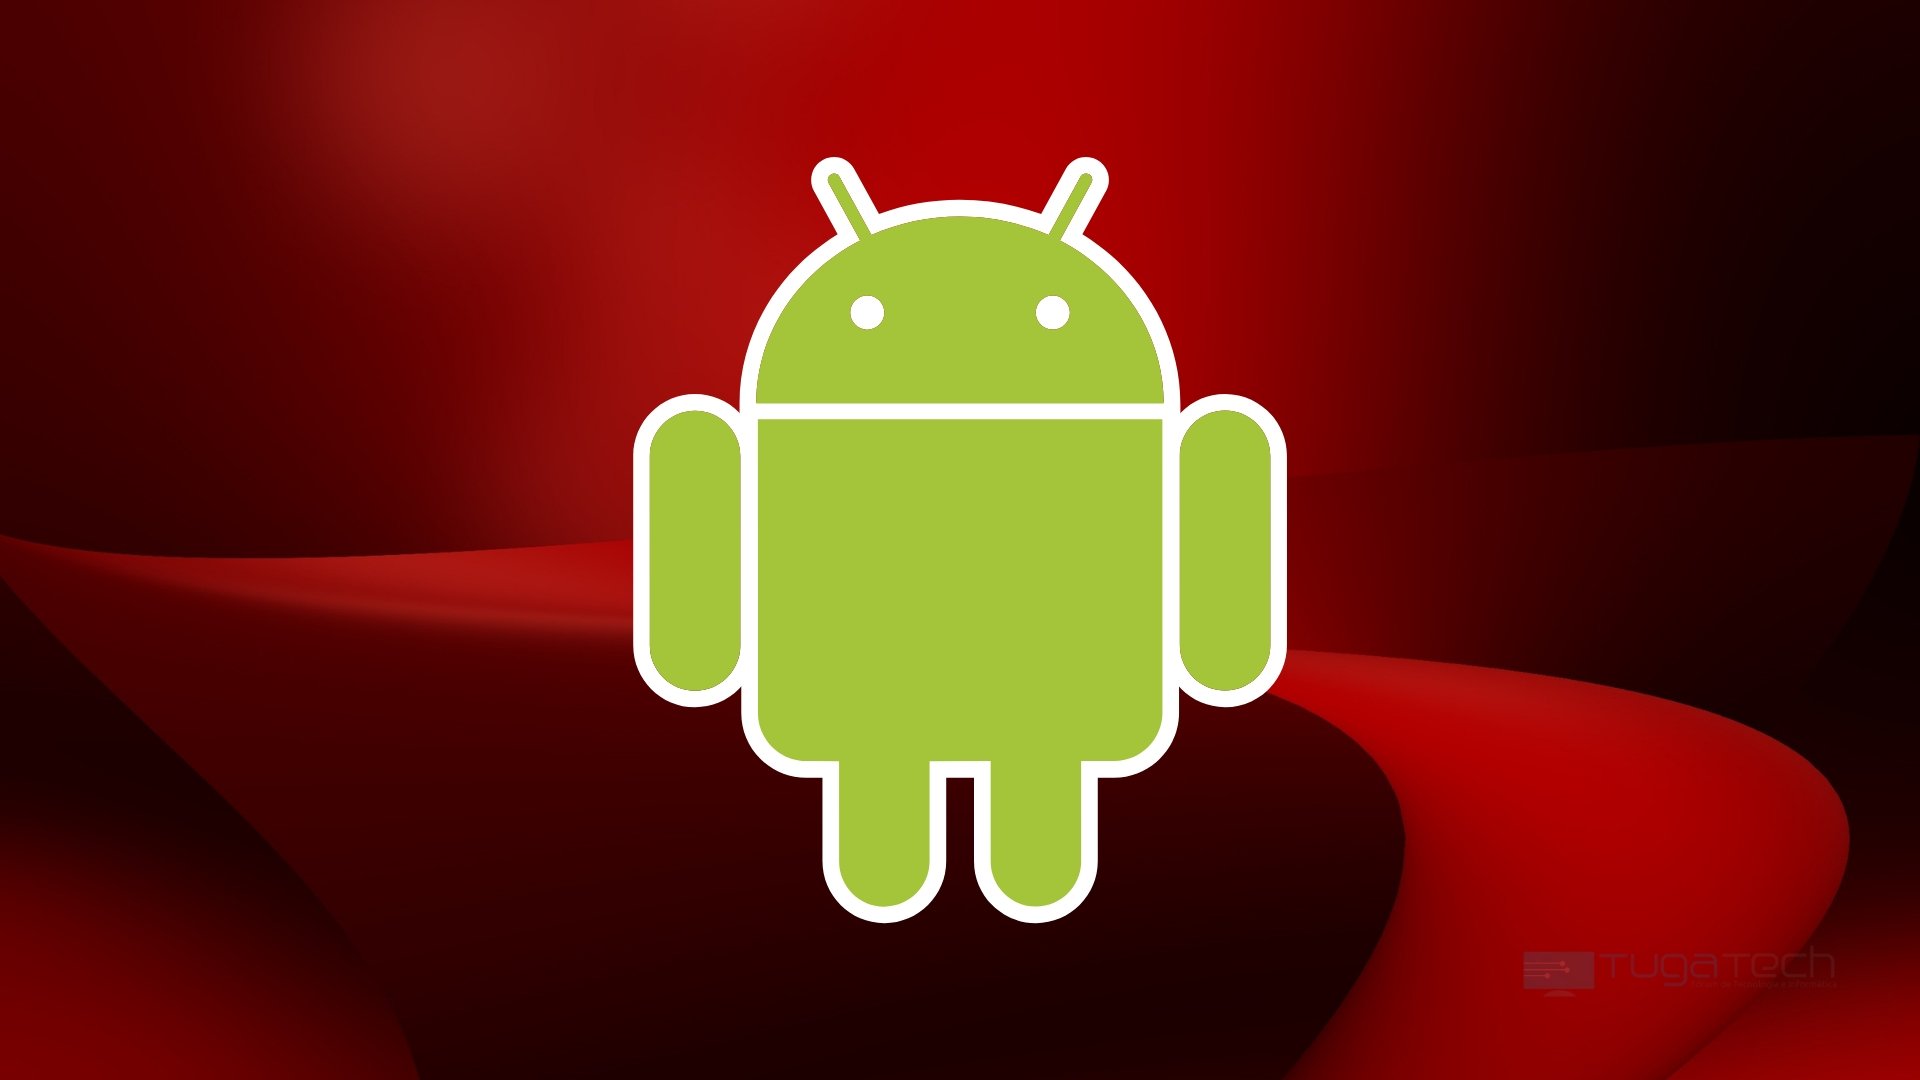 Android sobre fundo vermelho